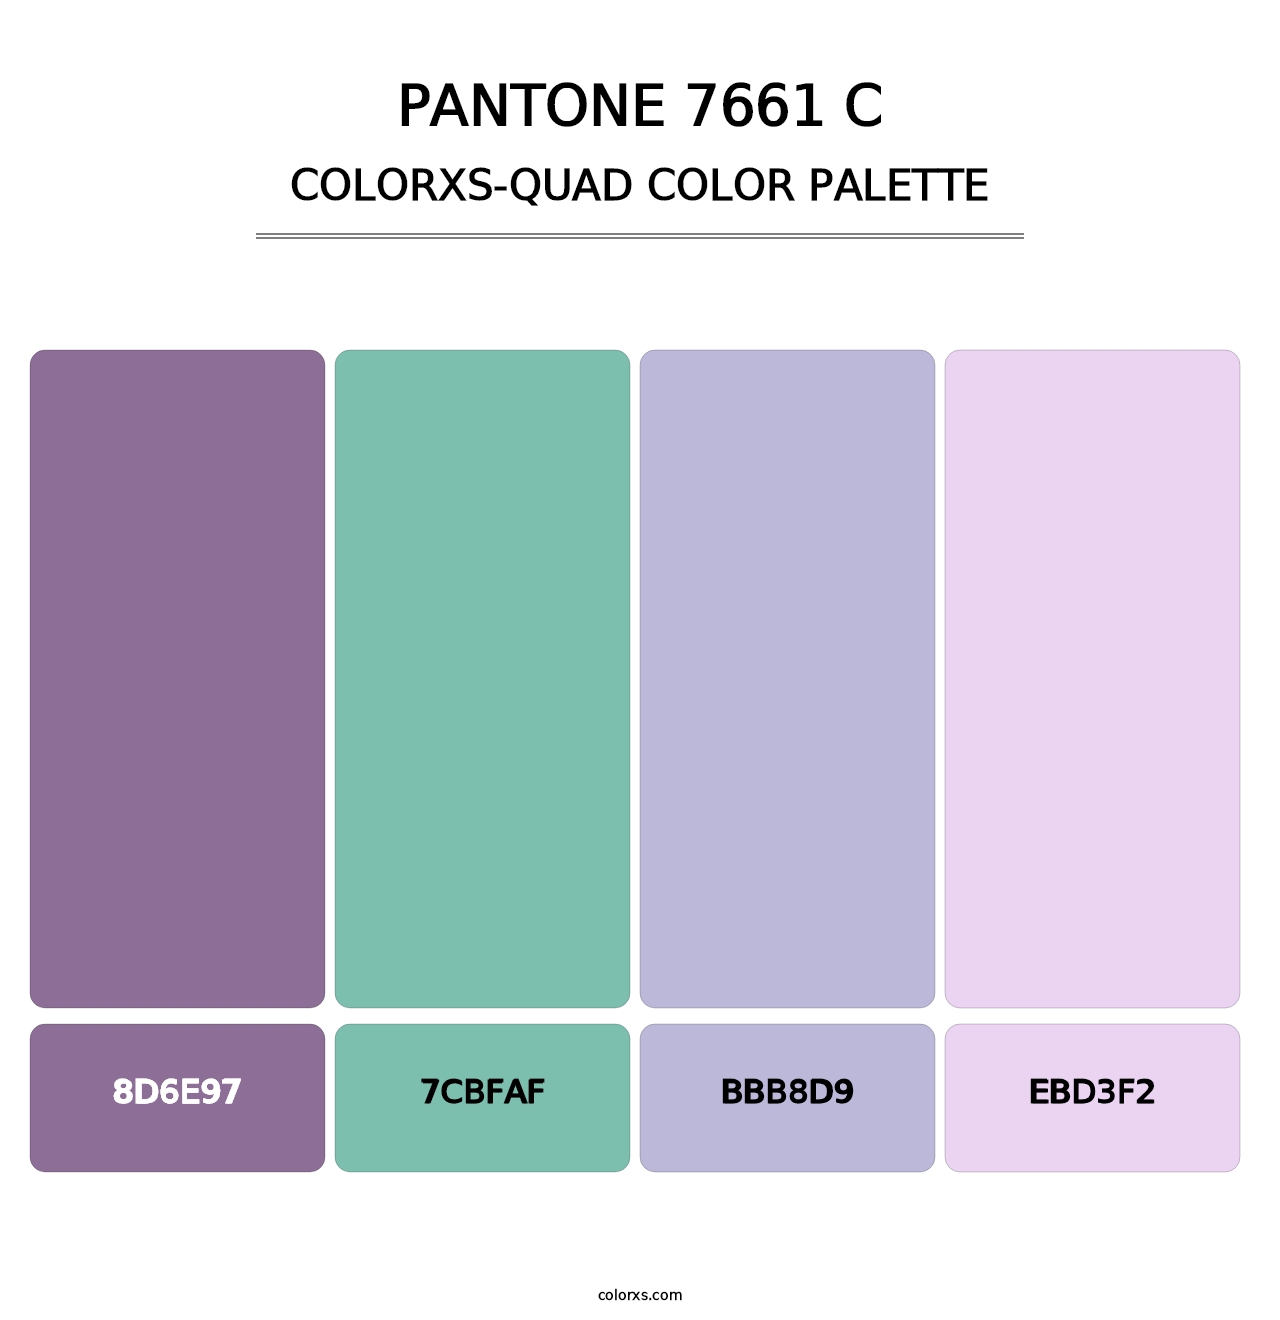 PANTONE 7661 C - Colorxs Quad Palette